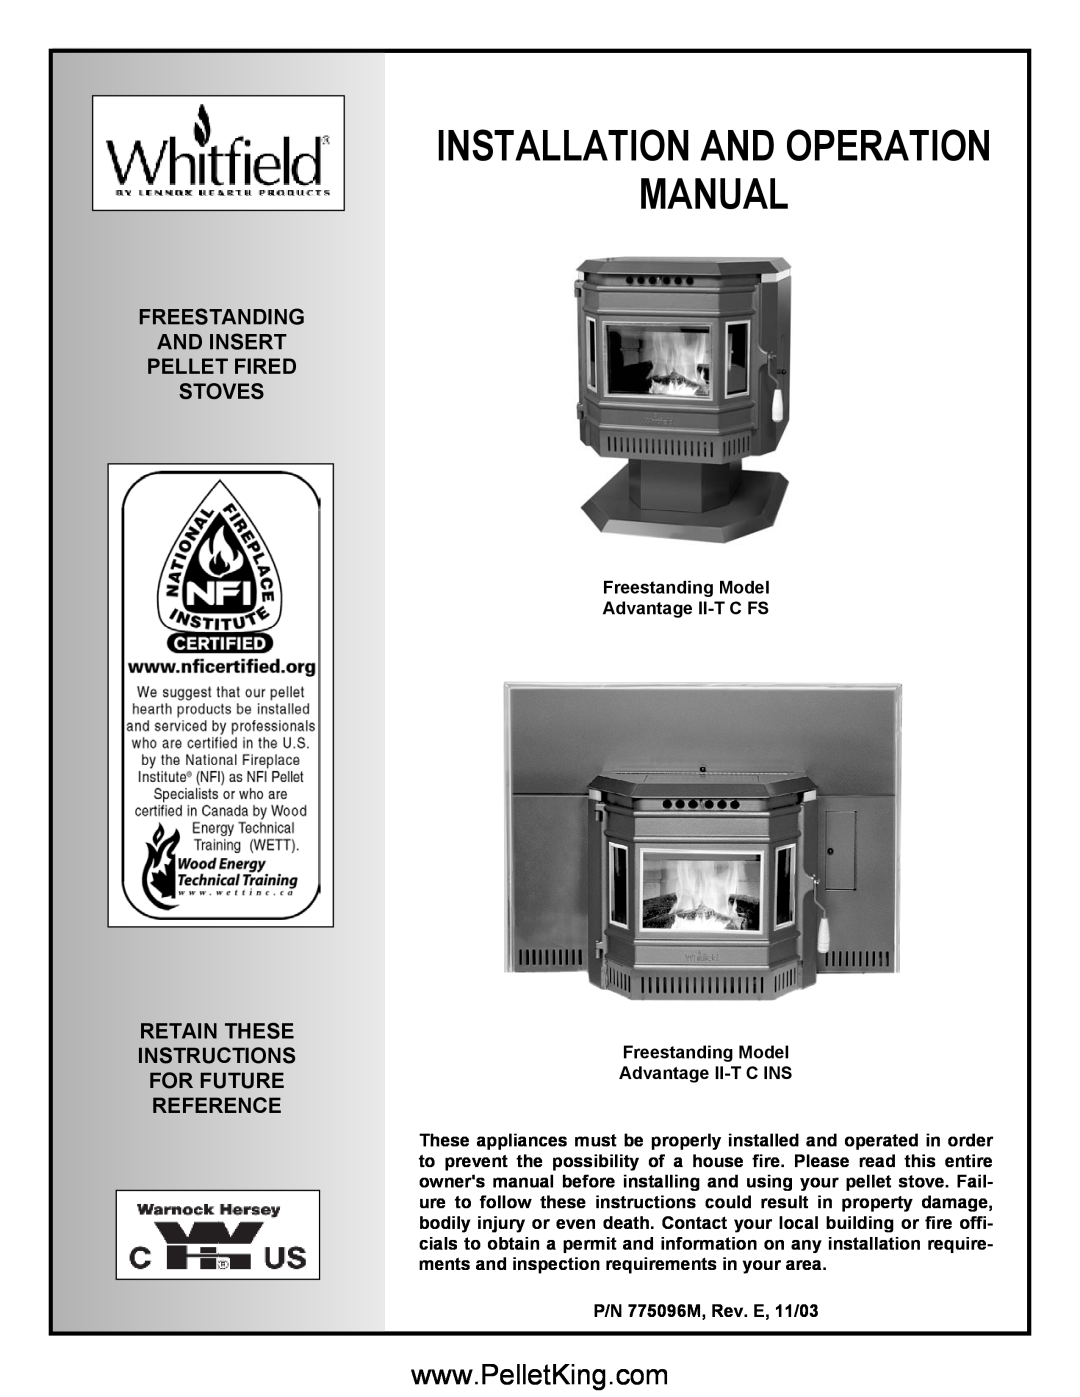 Lennox Hearth II-T C FS operation manual Freestanding And Insert Pellet Fired Stoves, P/N 775096M, Rev. E, 11/03 